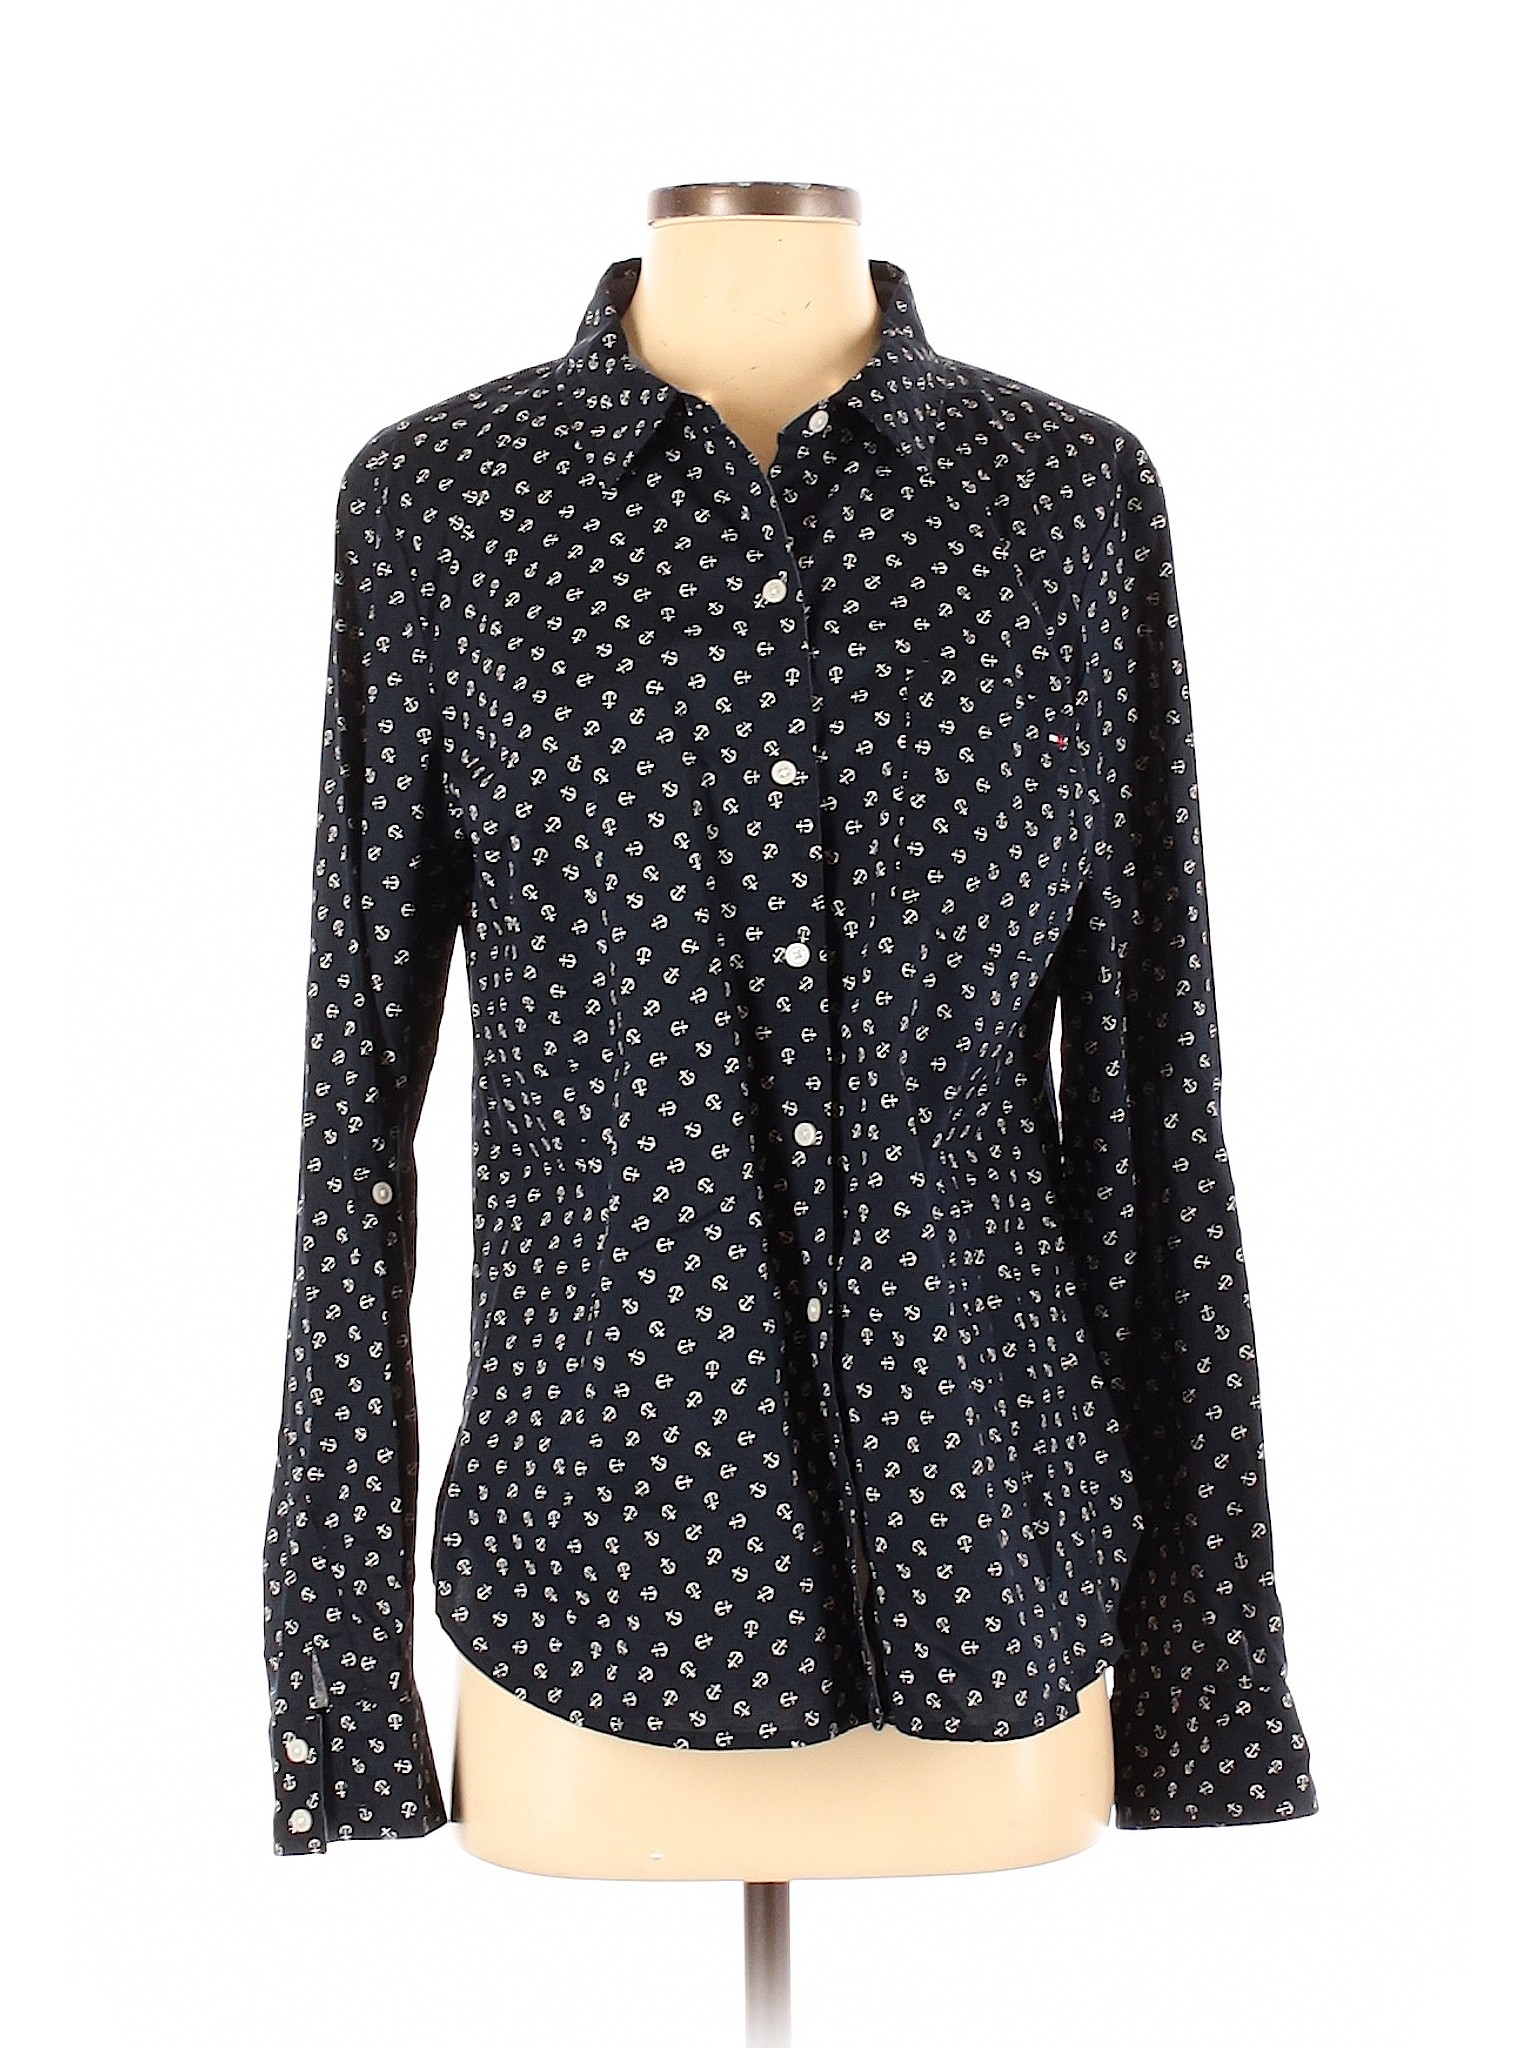 Tommy Hilfiger Women Blue Long Sleeve Button-Down Shirt M | eBay